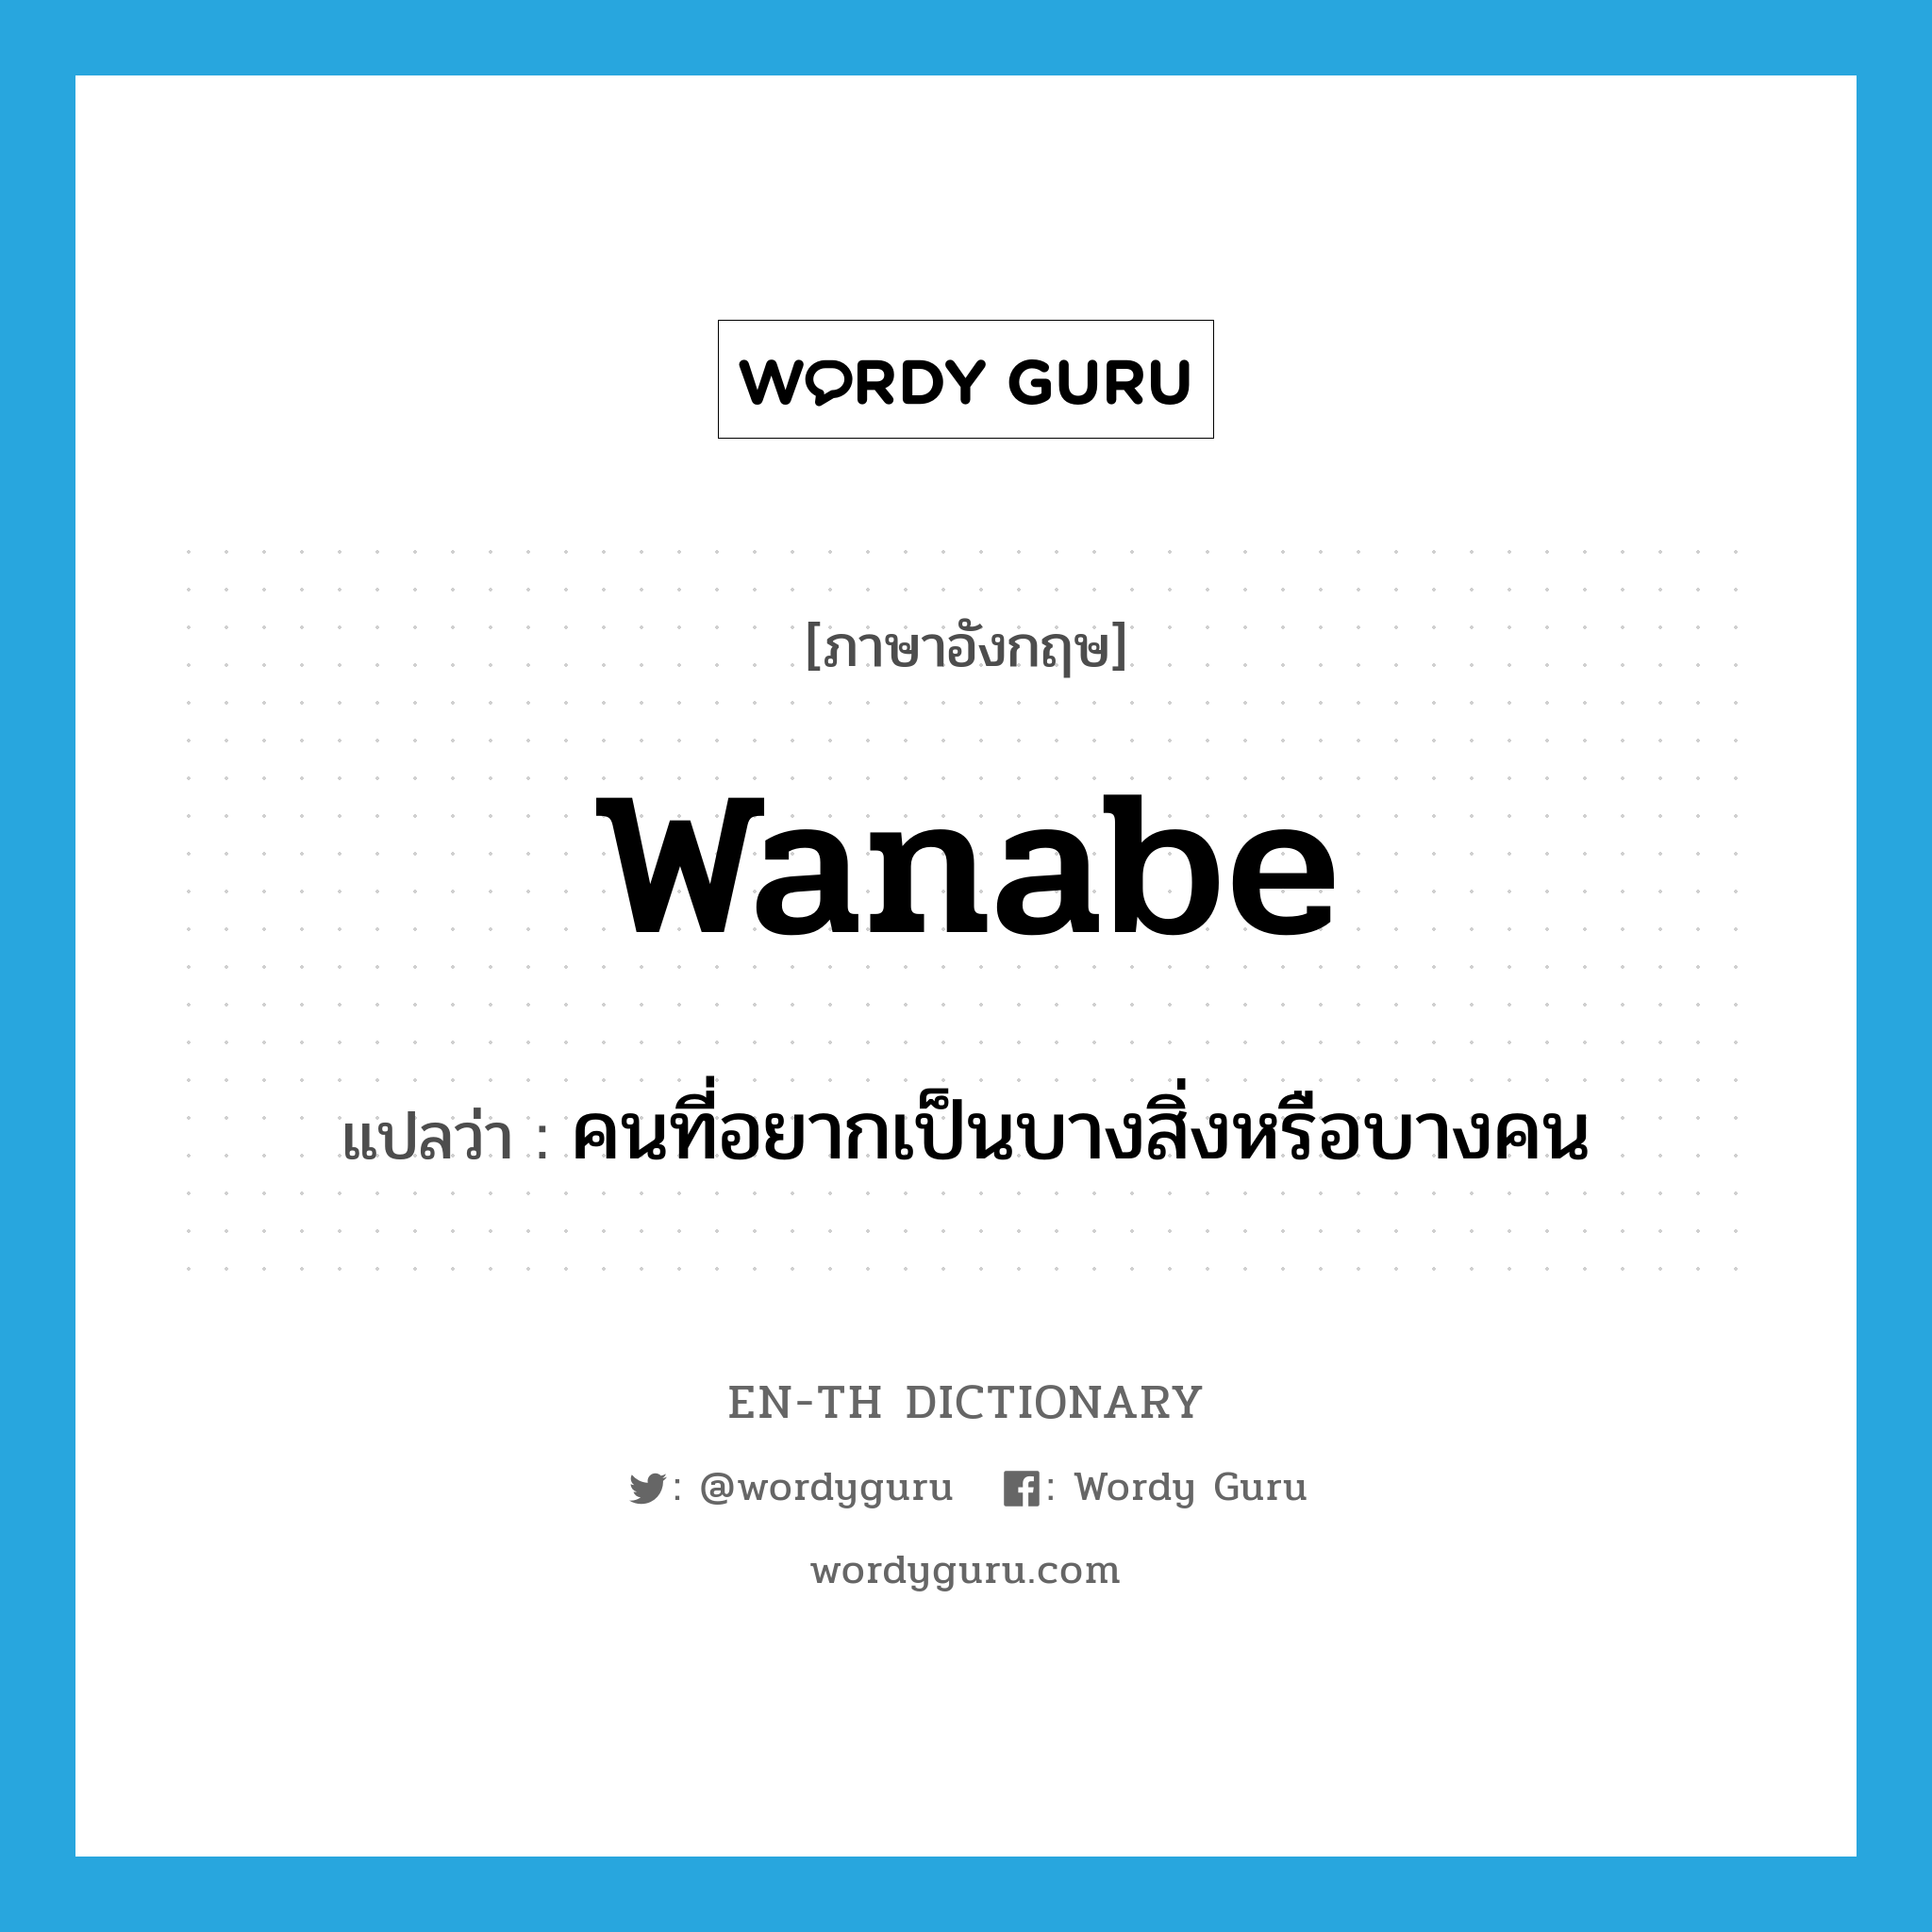 คนที่อยากเป็นบางสิ่งหรือบางคน ภาษาอังกฤษ?, คำศัพท์ภาษาอังกฤษ คนที่อยากเป็นบางสิ่งหรือบางคน แปลว่า wanabe ประเภท SL หมวด SL